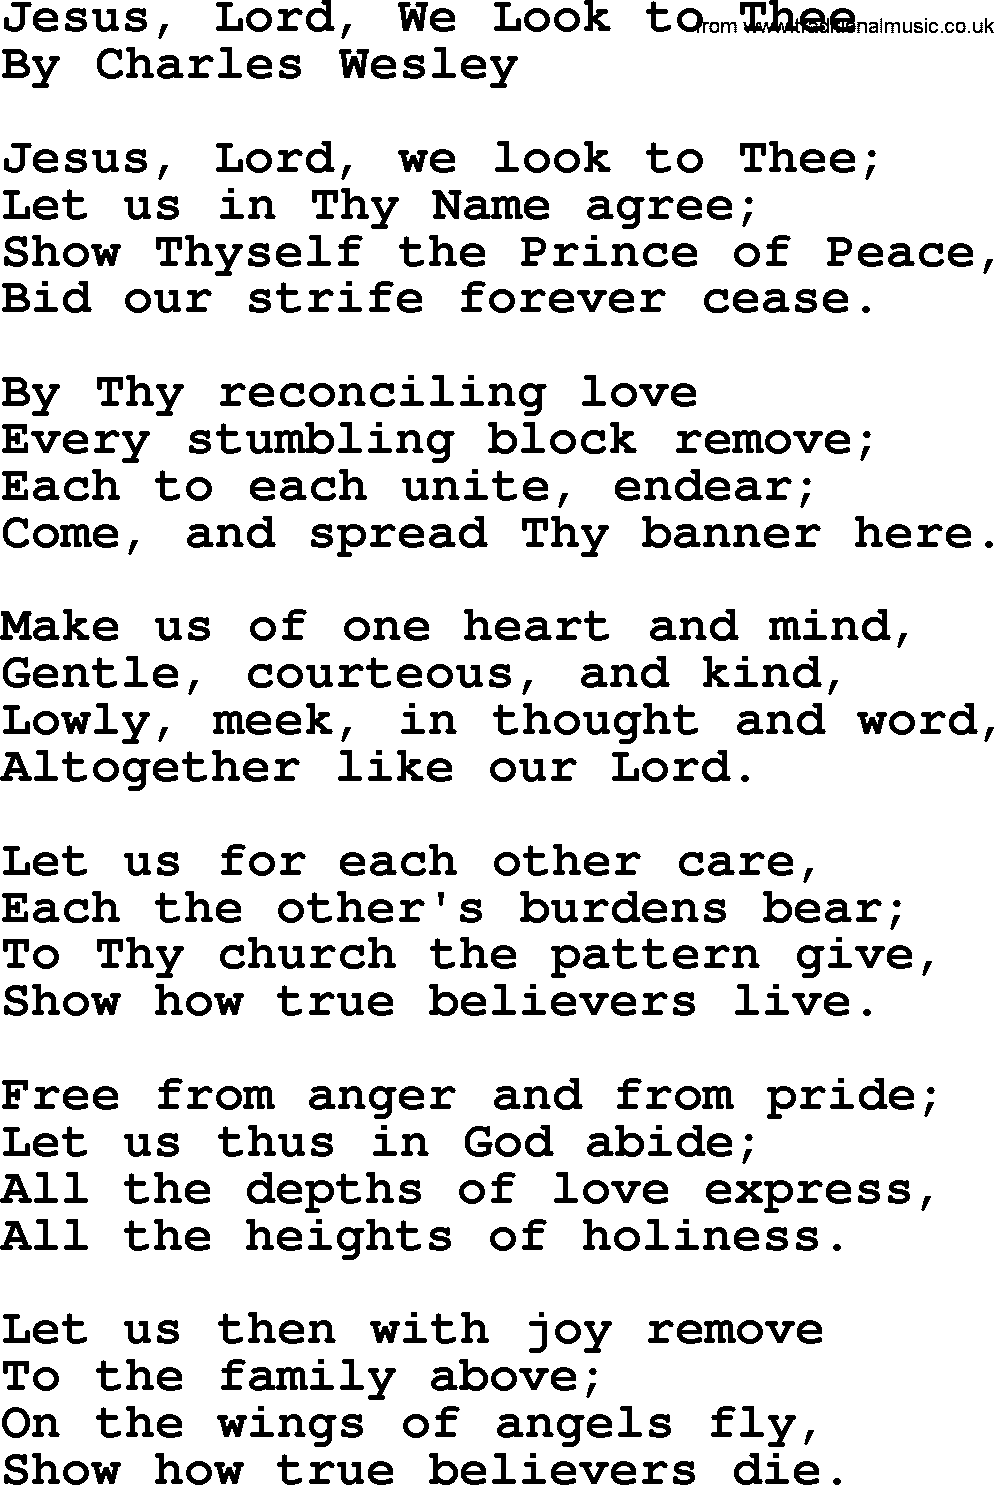 Charles Wesley hymn: Jesus, Lord, We Look To Thee, lyrics